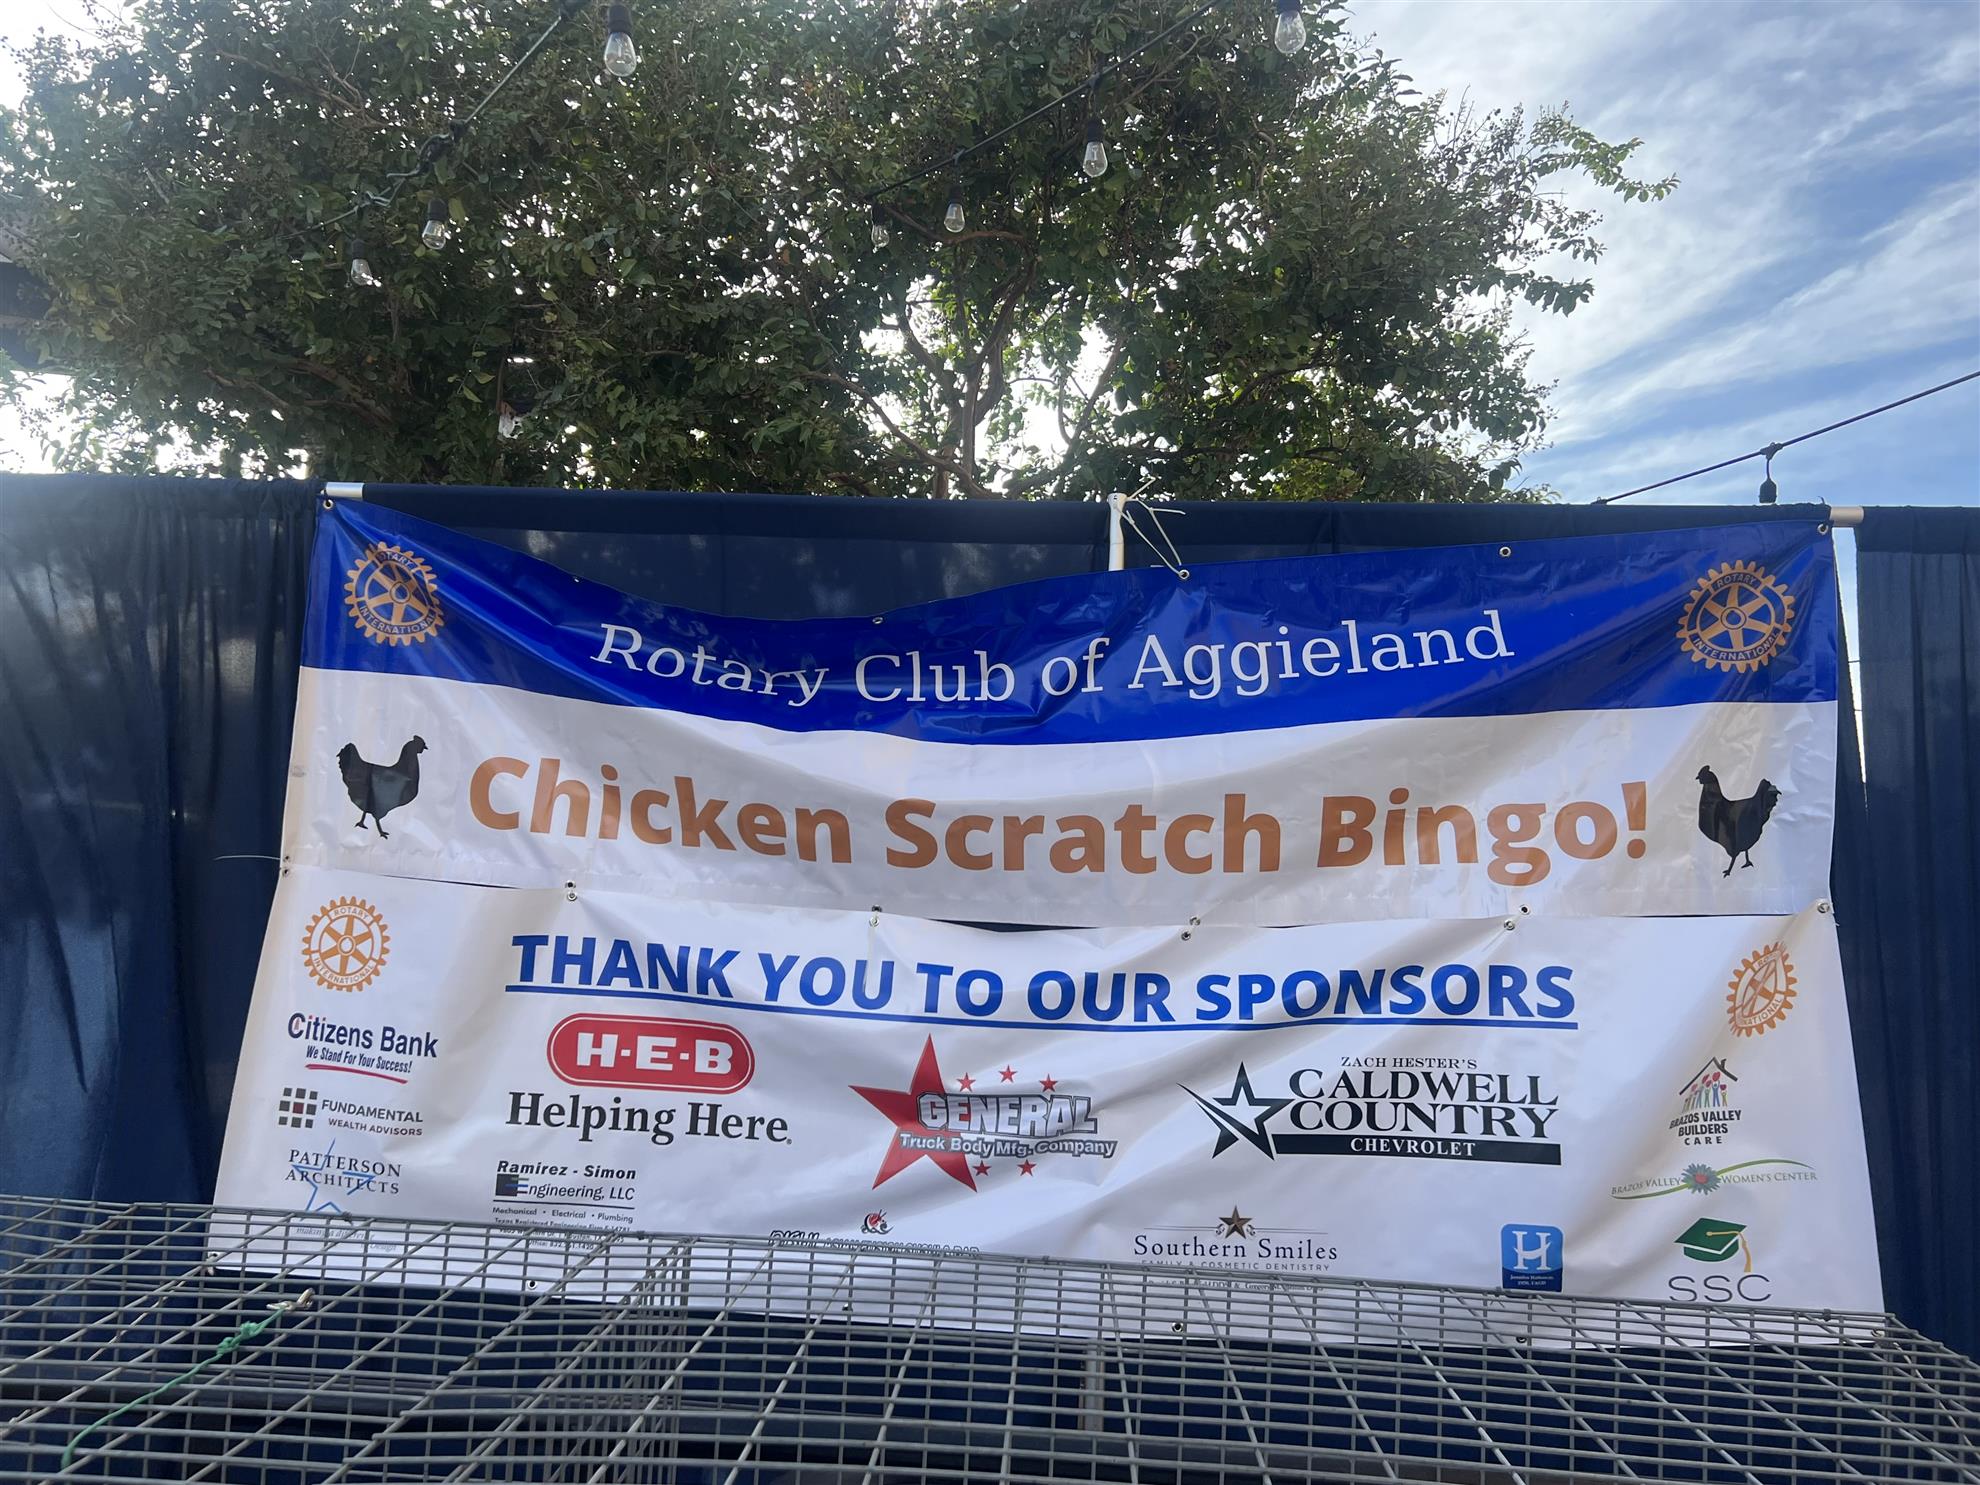 The Chicken Scratch Bingo banner.